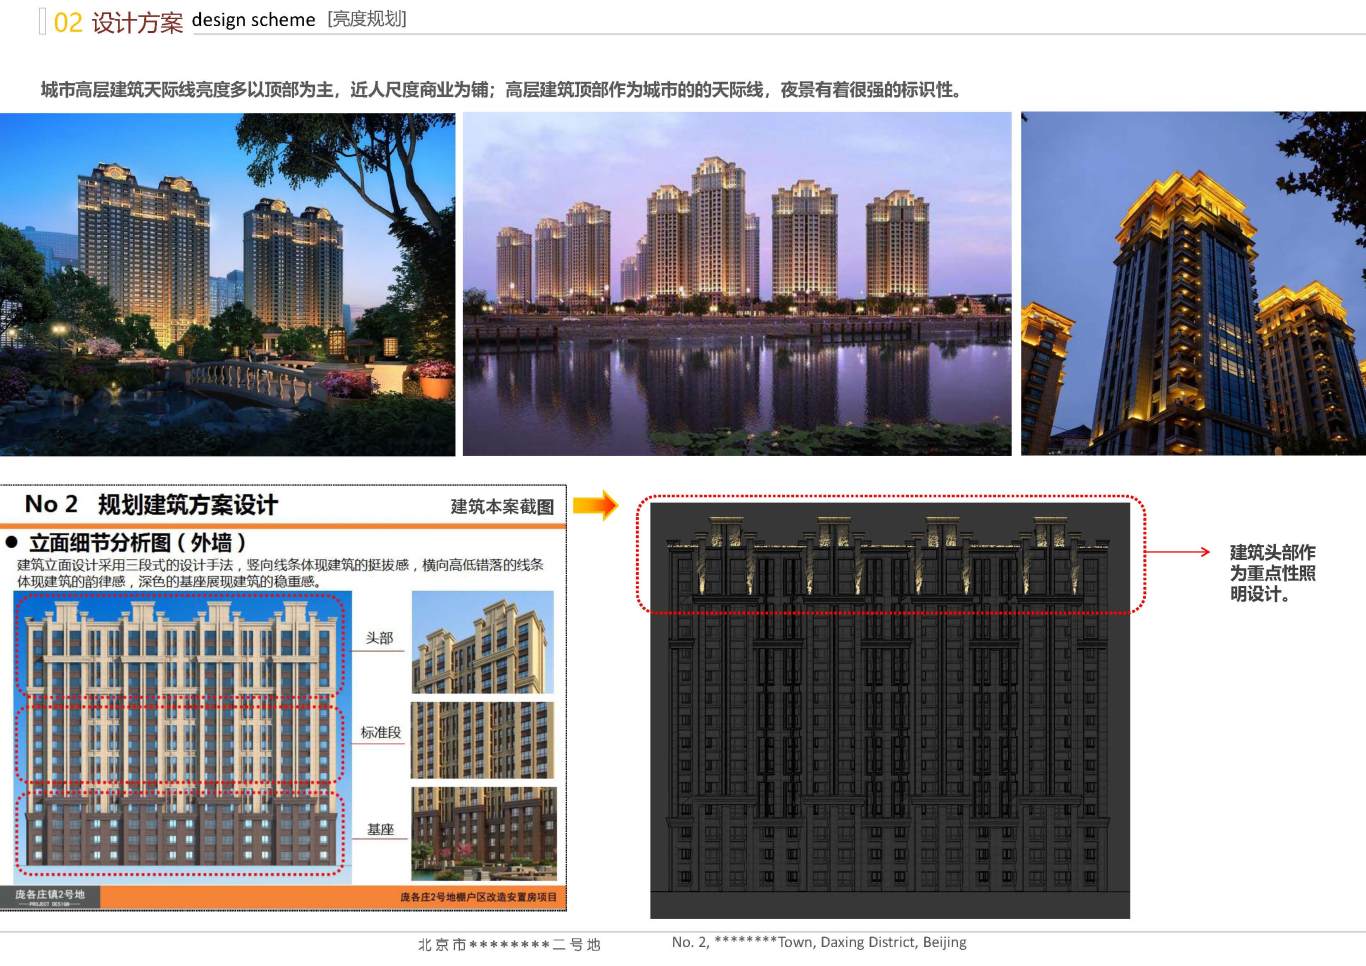 北京市大興區*****二號地夜景照明項目案例圖11